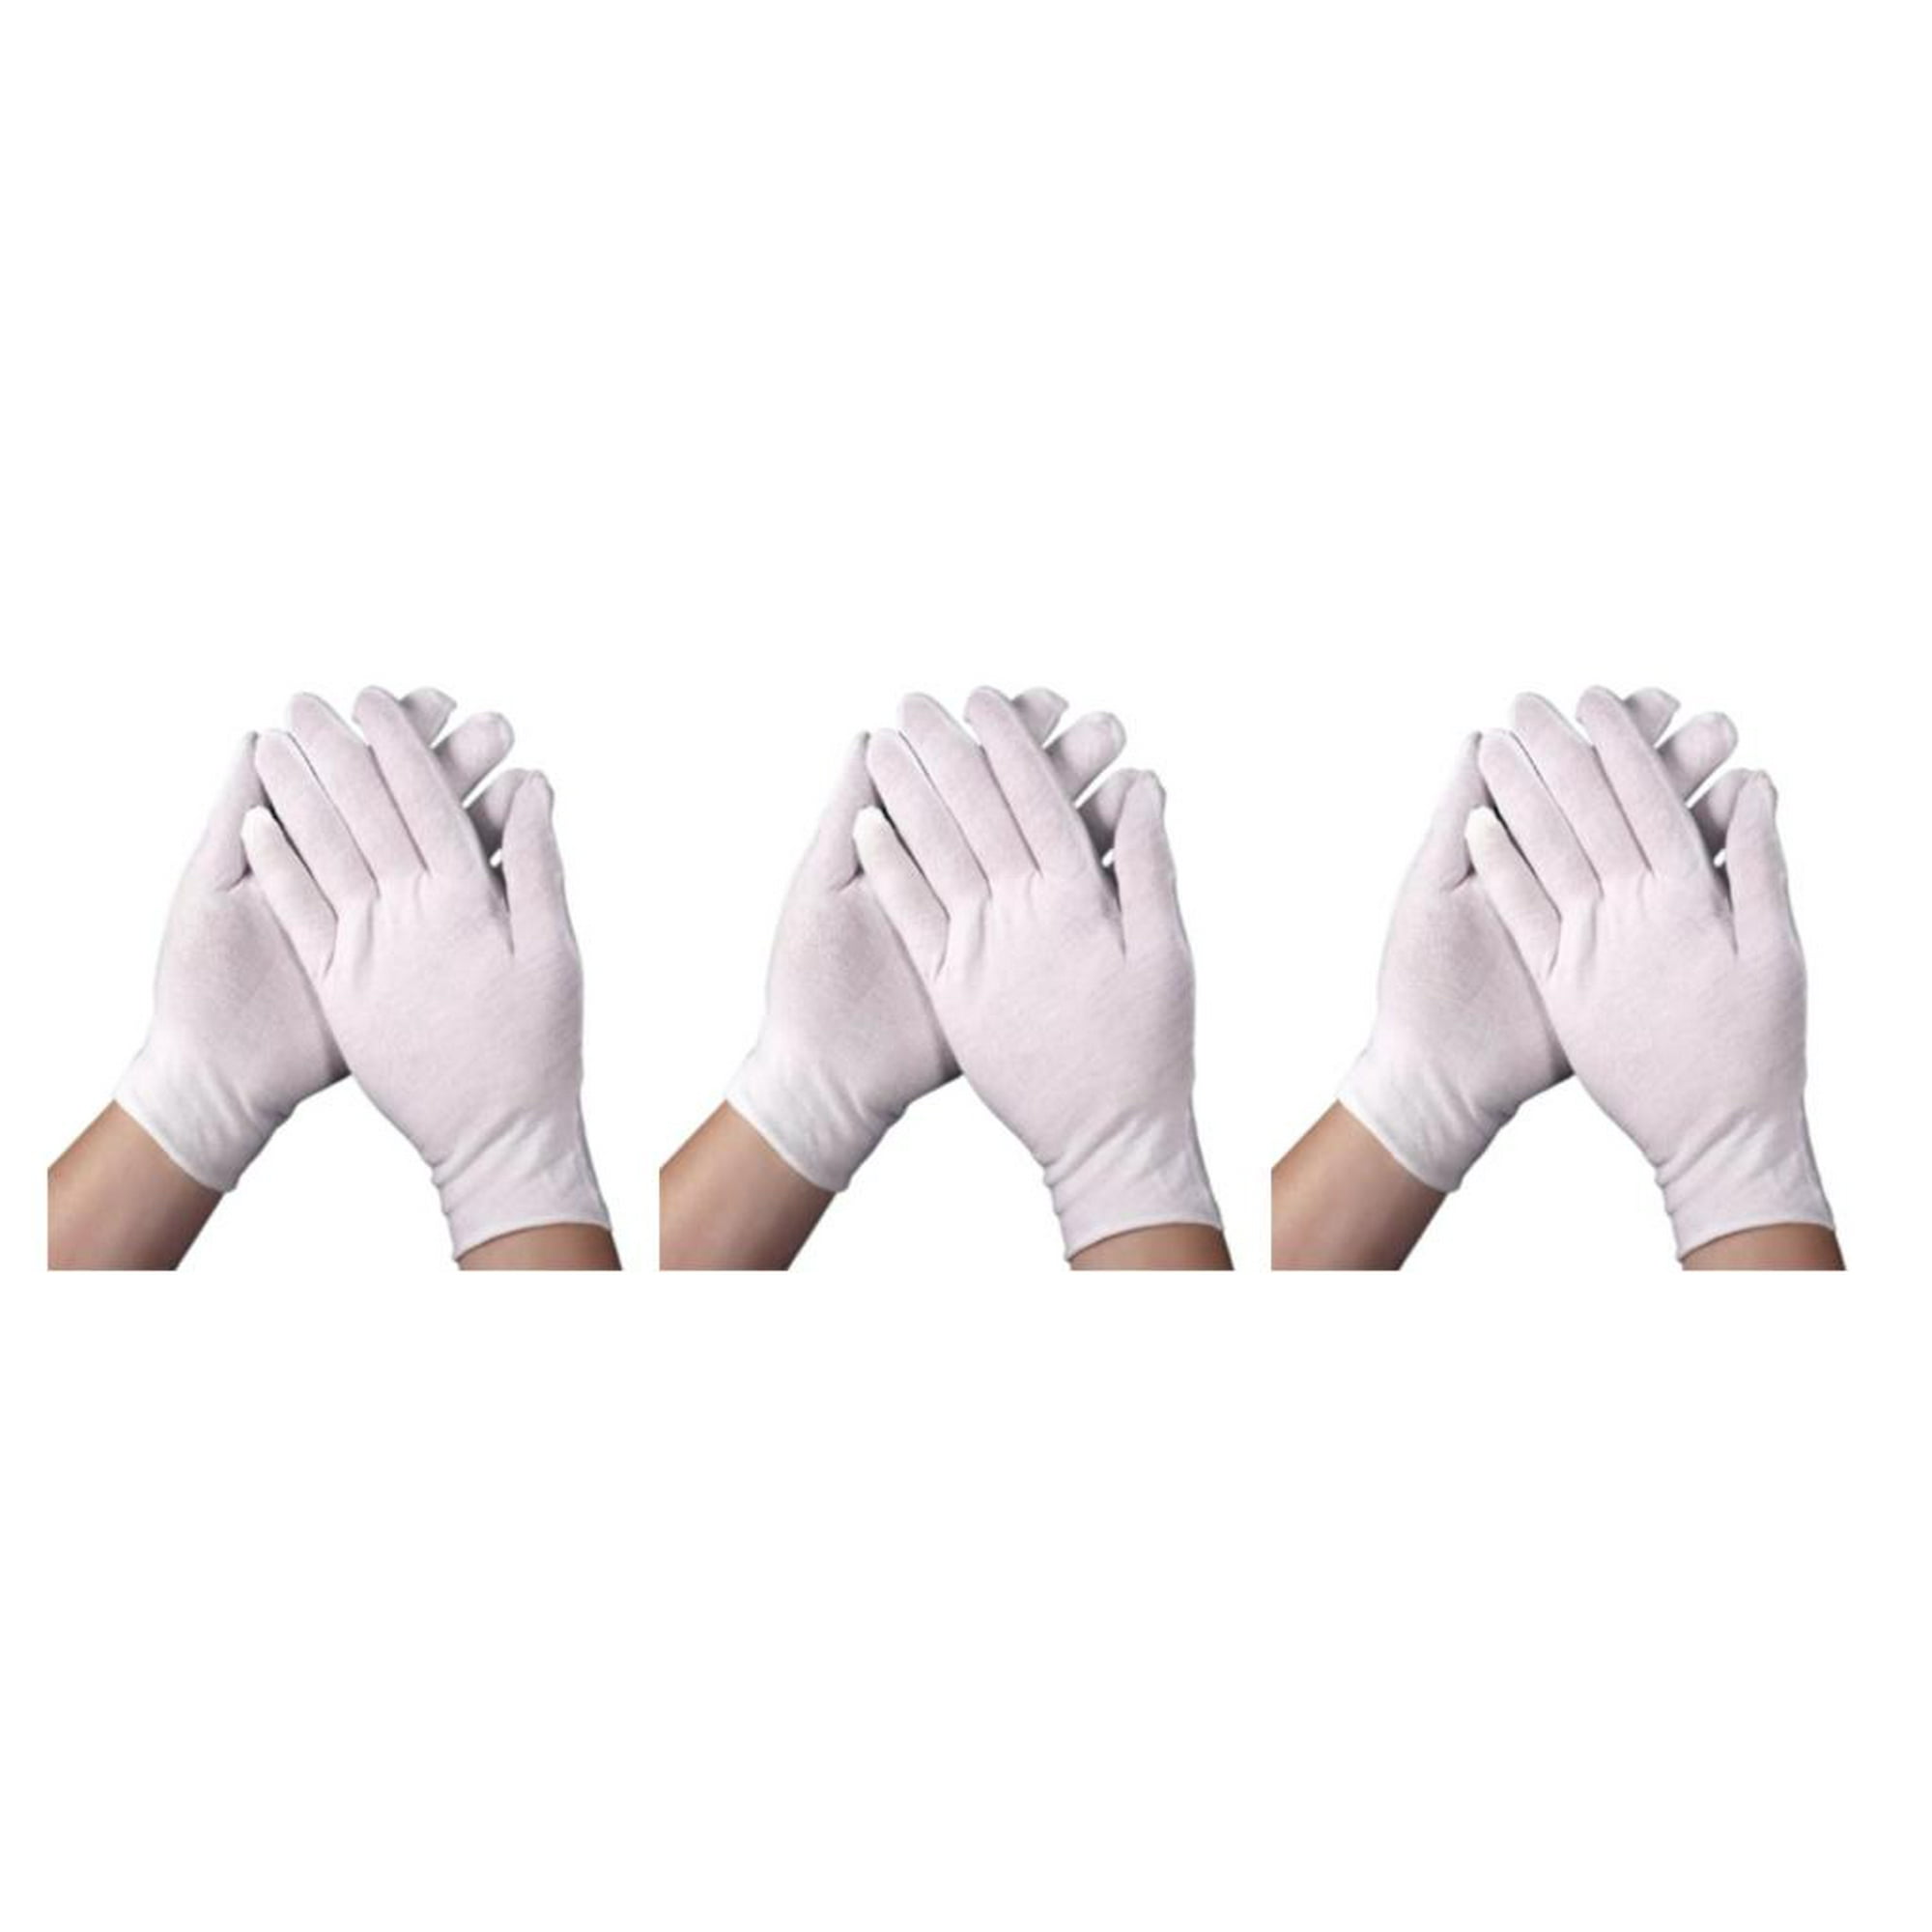 Guantes de algodón blanco, guantes de trabajo blancos, 12 pares de